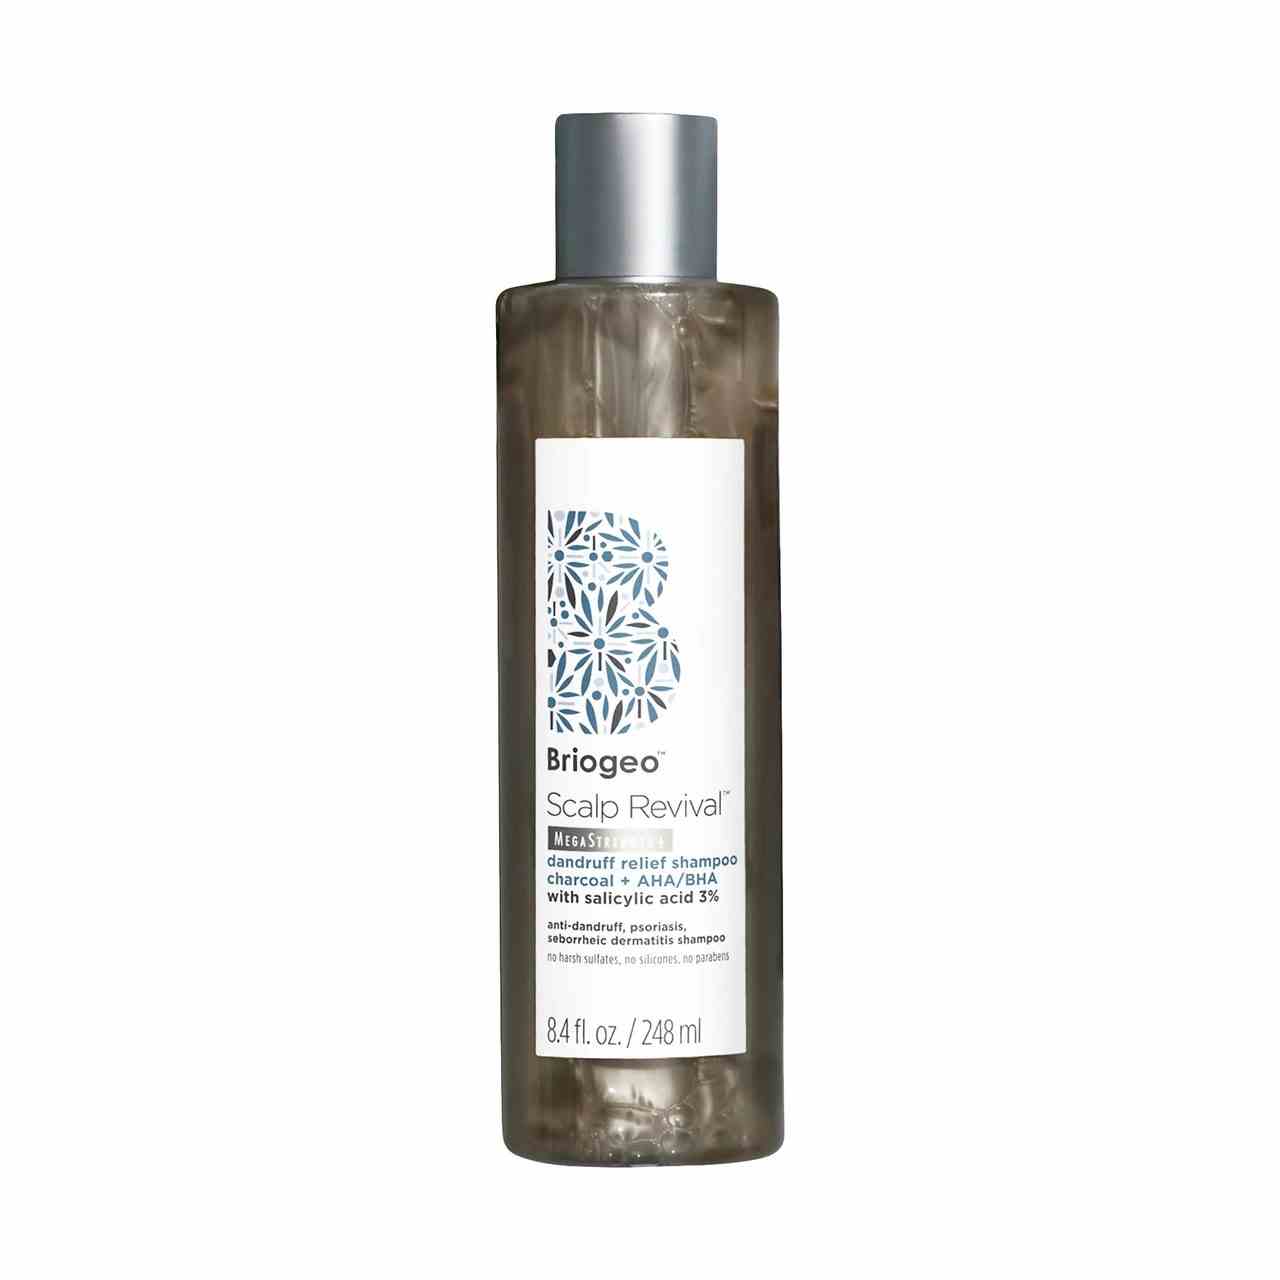 Briogeo Scalp Revival Dandruff Relief Charcoal Shampoo Flasche schwarzes Shampoo mit weißem Etikett auf weißem Hintergrund